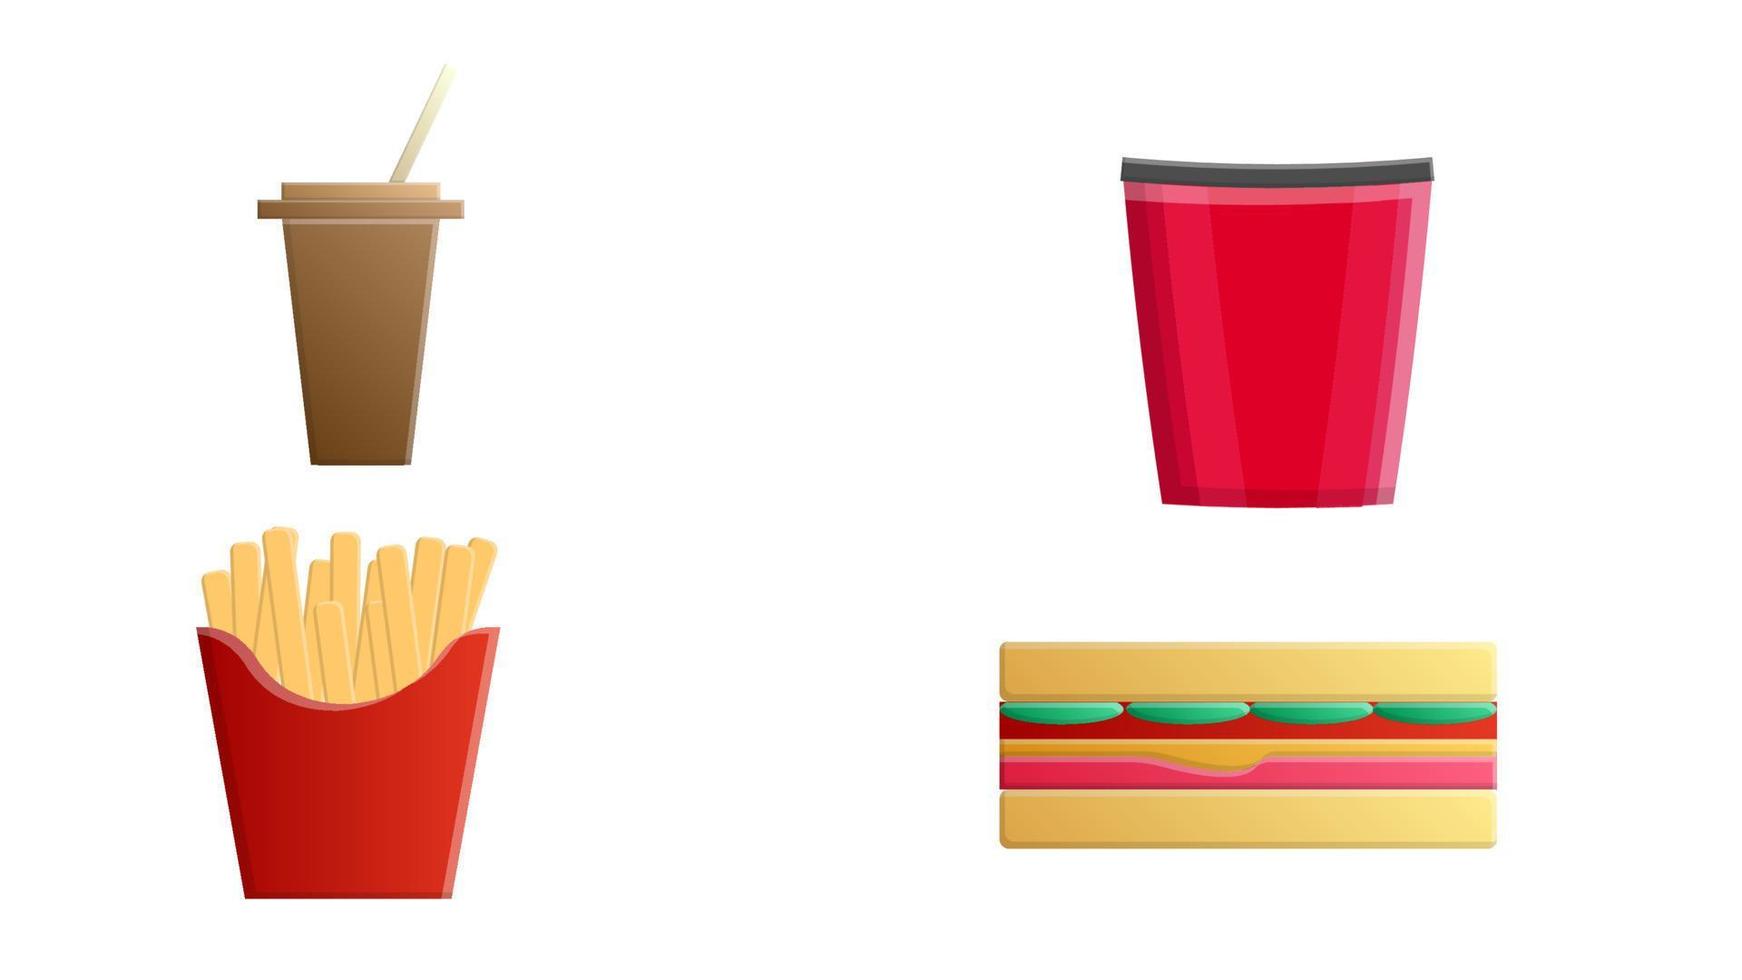 Fast food. ensemble d'icônes de nourriture de vecteur de dessin animé isolé sur fond blanc. ketchup, moutarde, verre de cola, frites, hamburger, frites de patates douces, burger avec œuf au plat, pop corn, hot dog, pizza